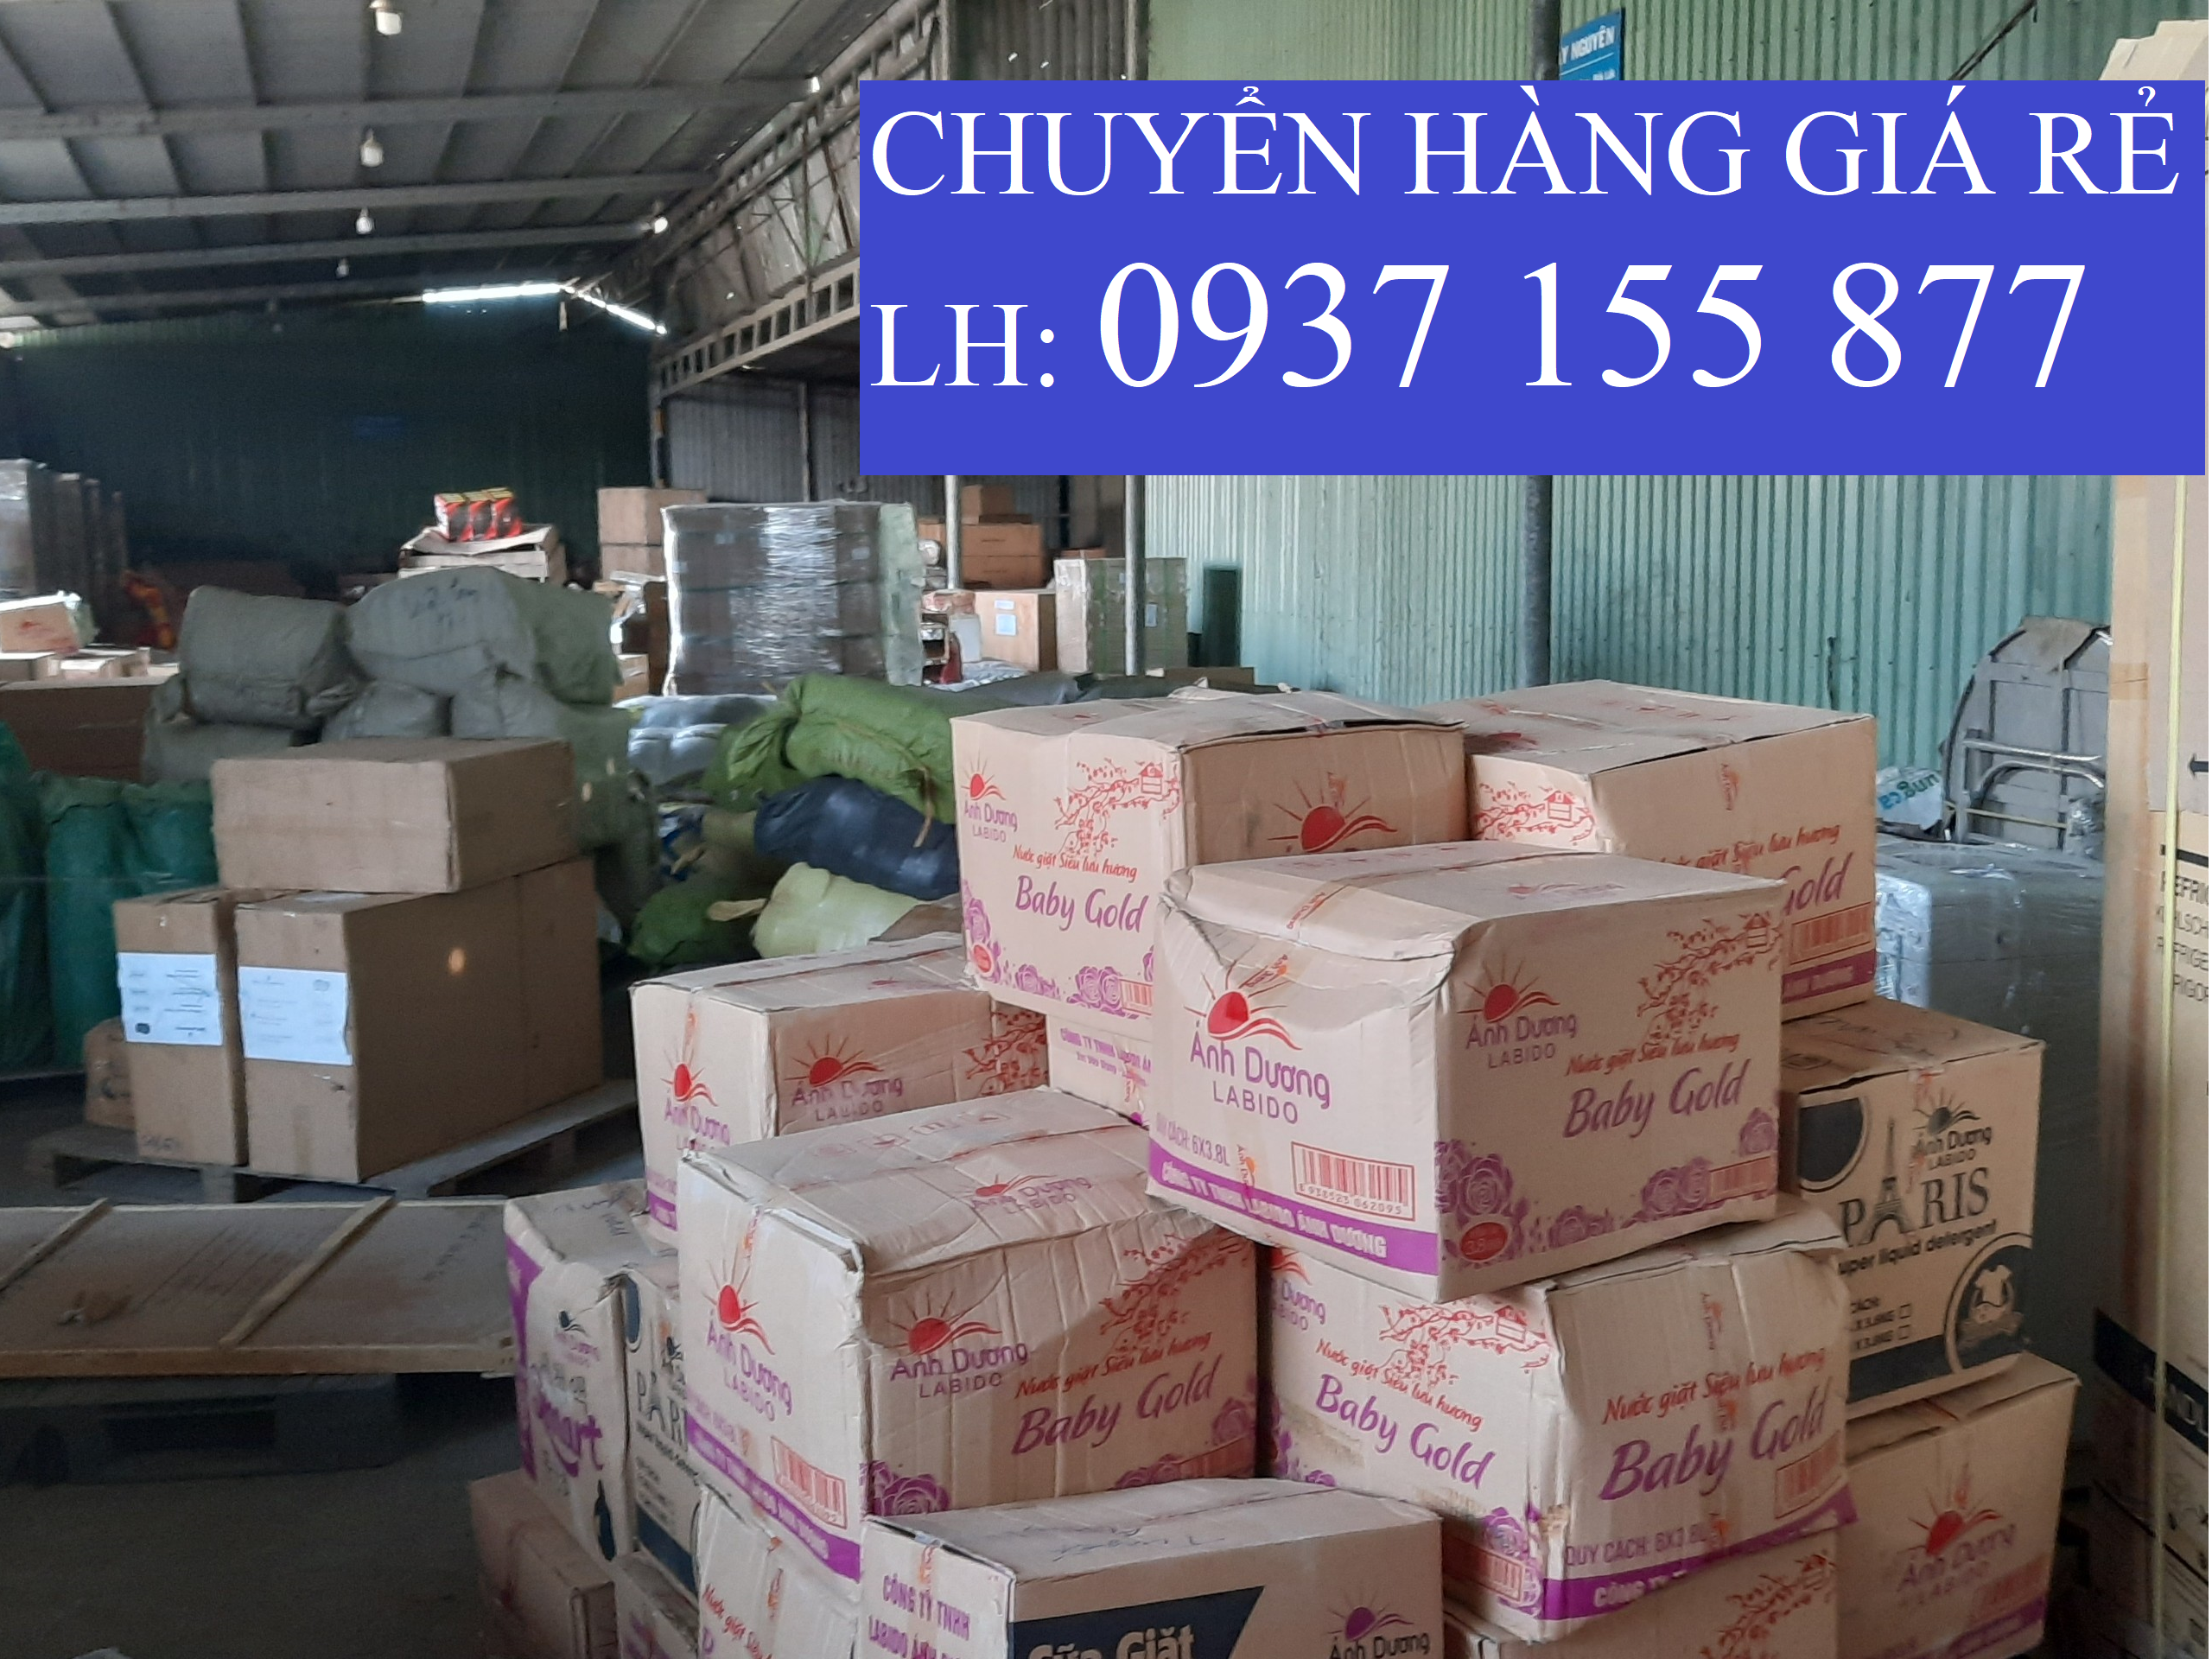 Chành xe vận chuyển hàng đi Quảng Ninh